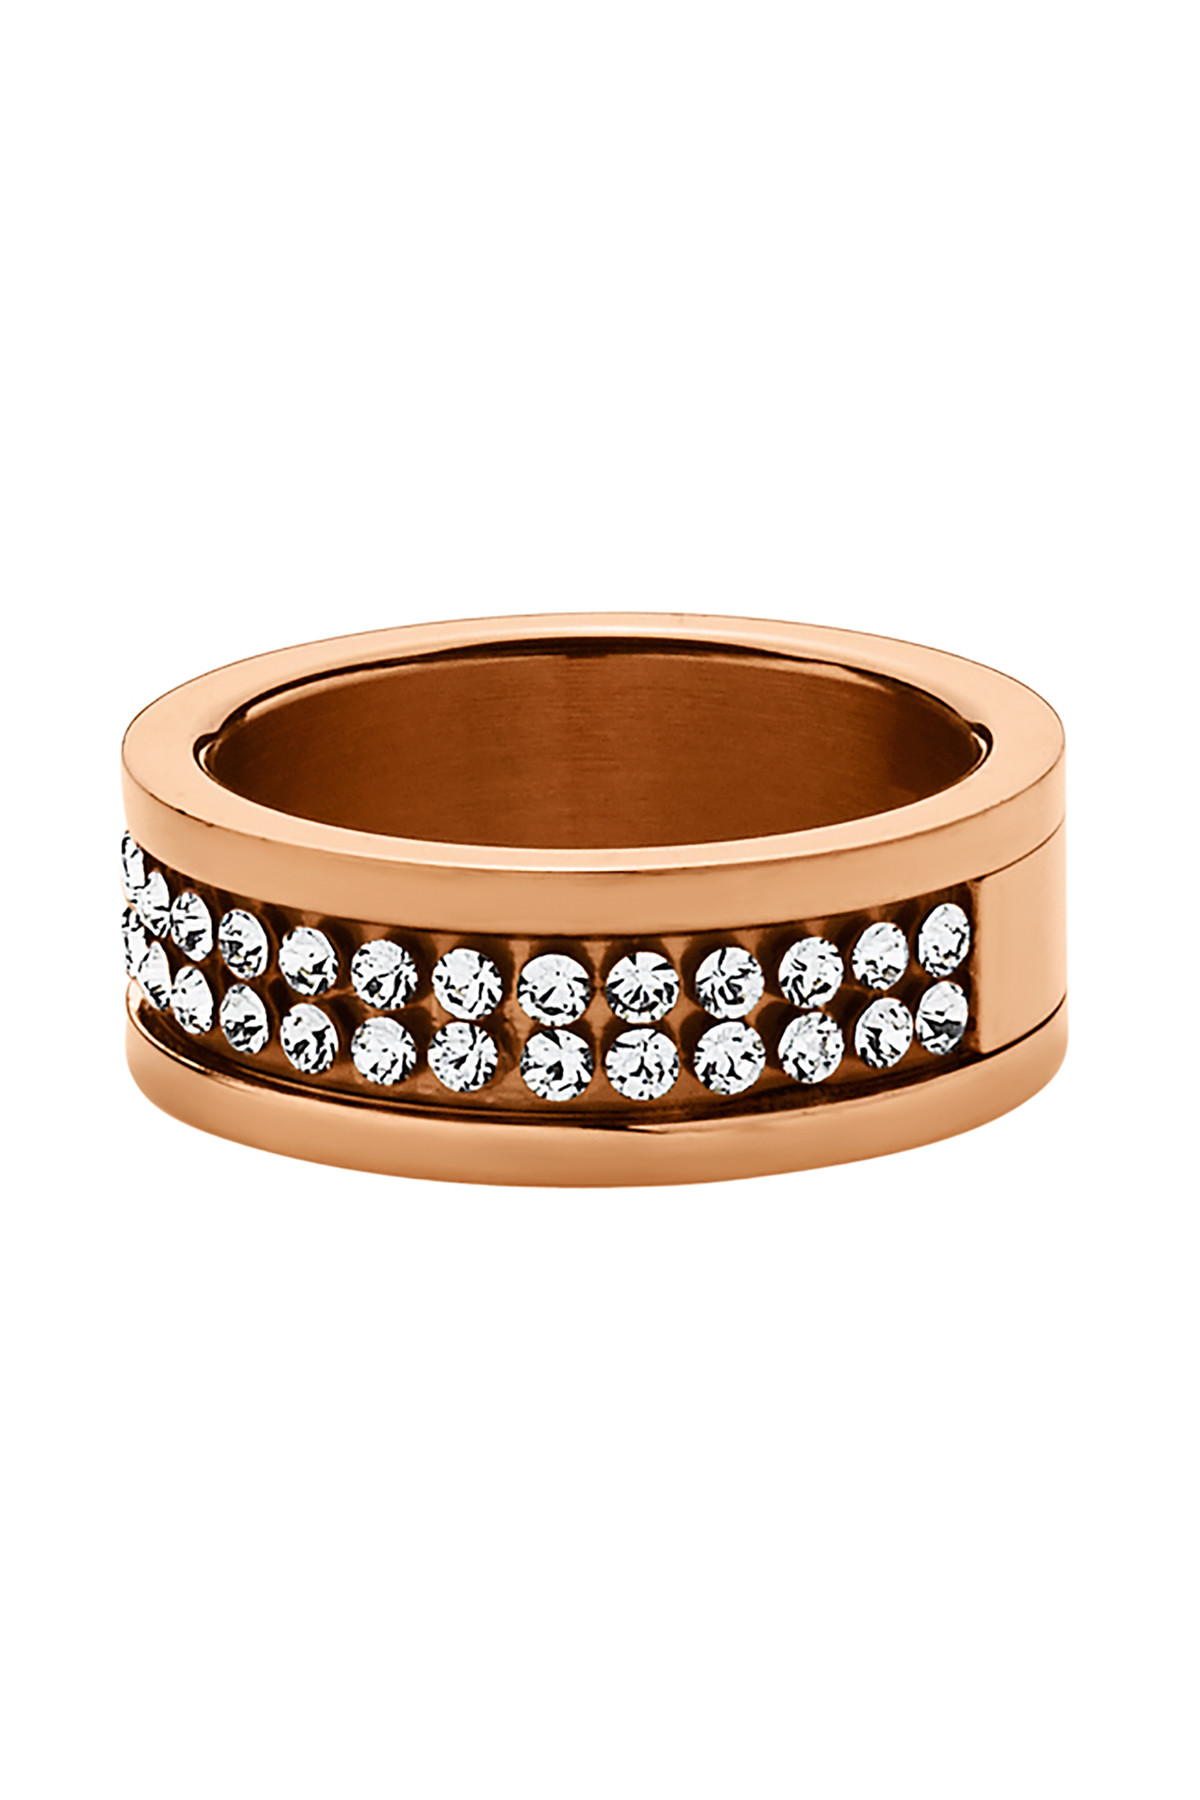 Billede af Dyrberg/Kern Fratianne Ring, Color: Gold/Crystal, I/, Women